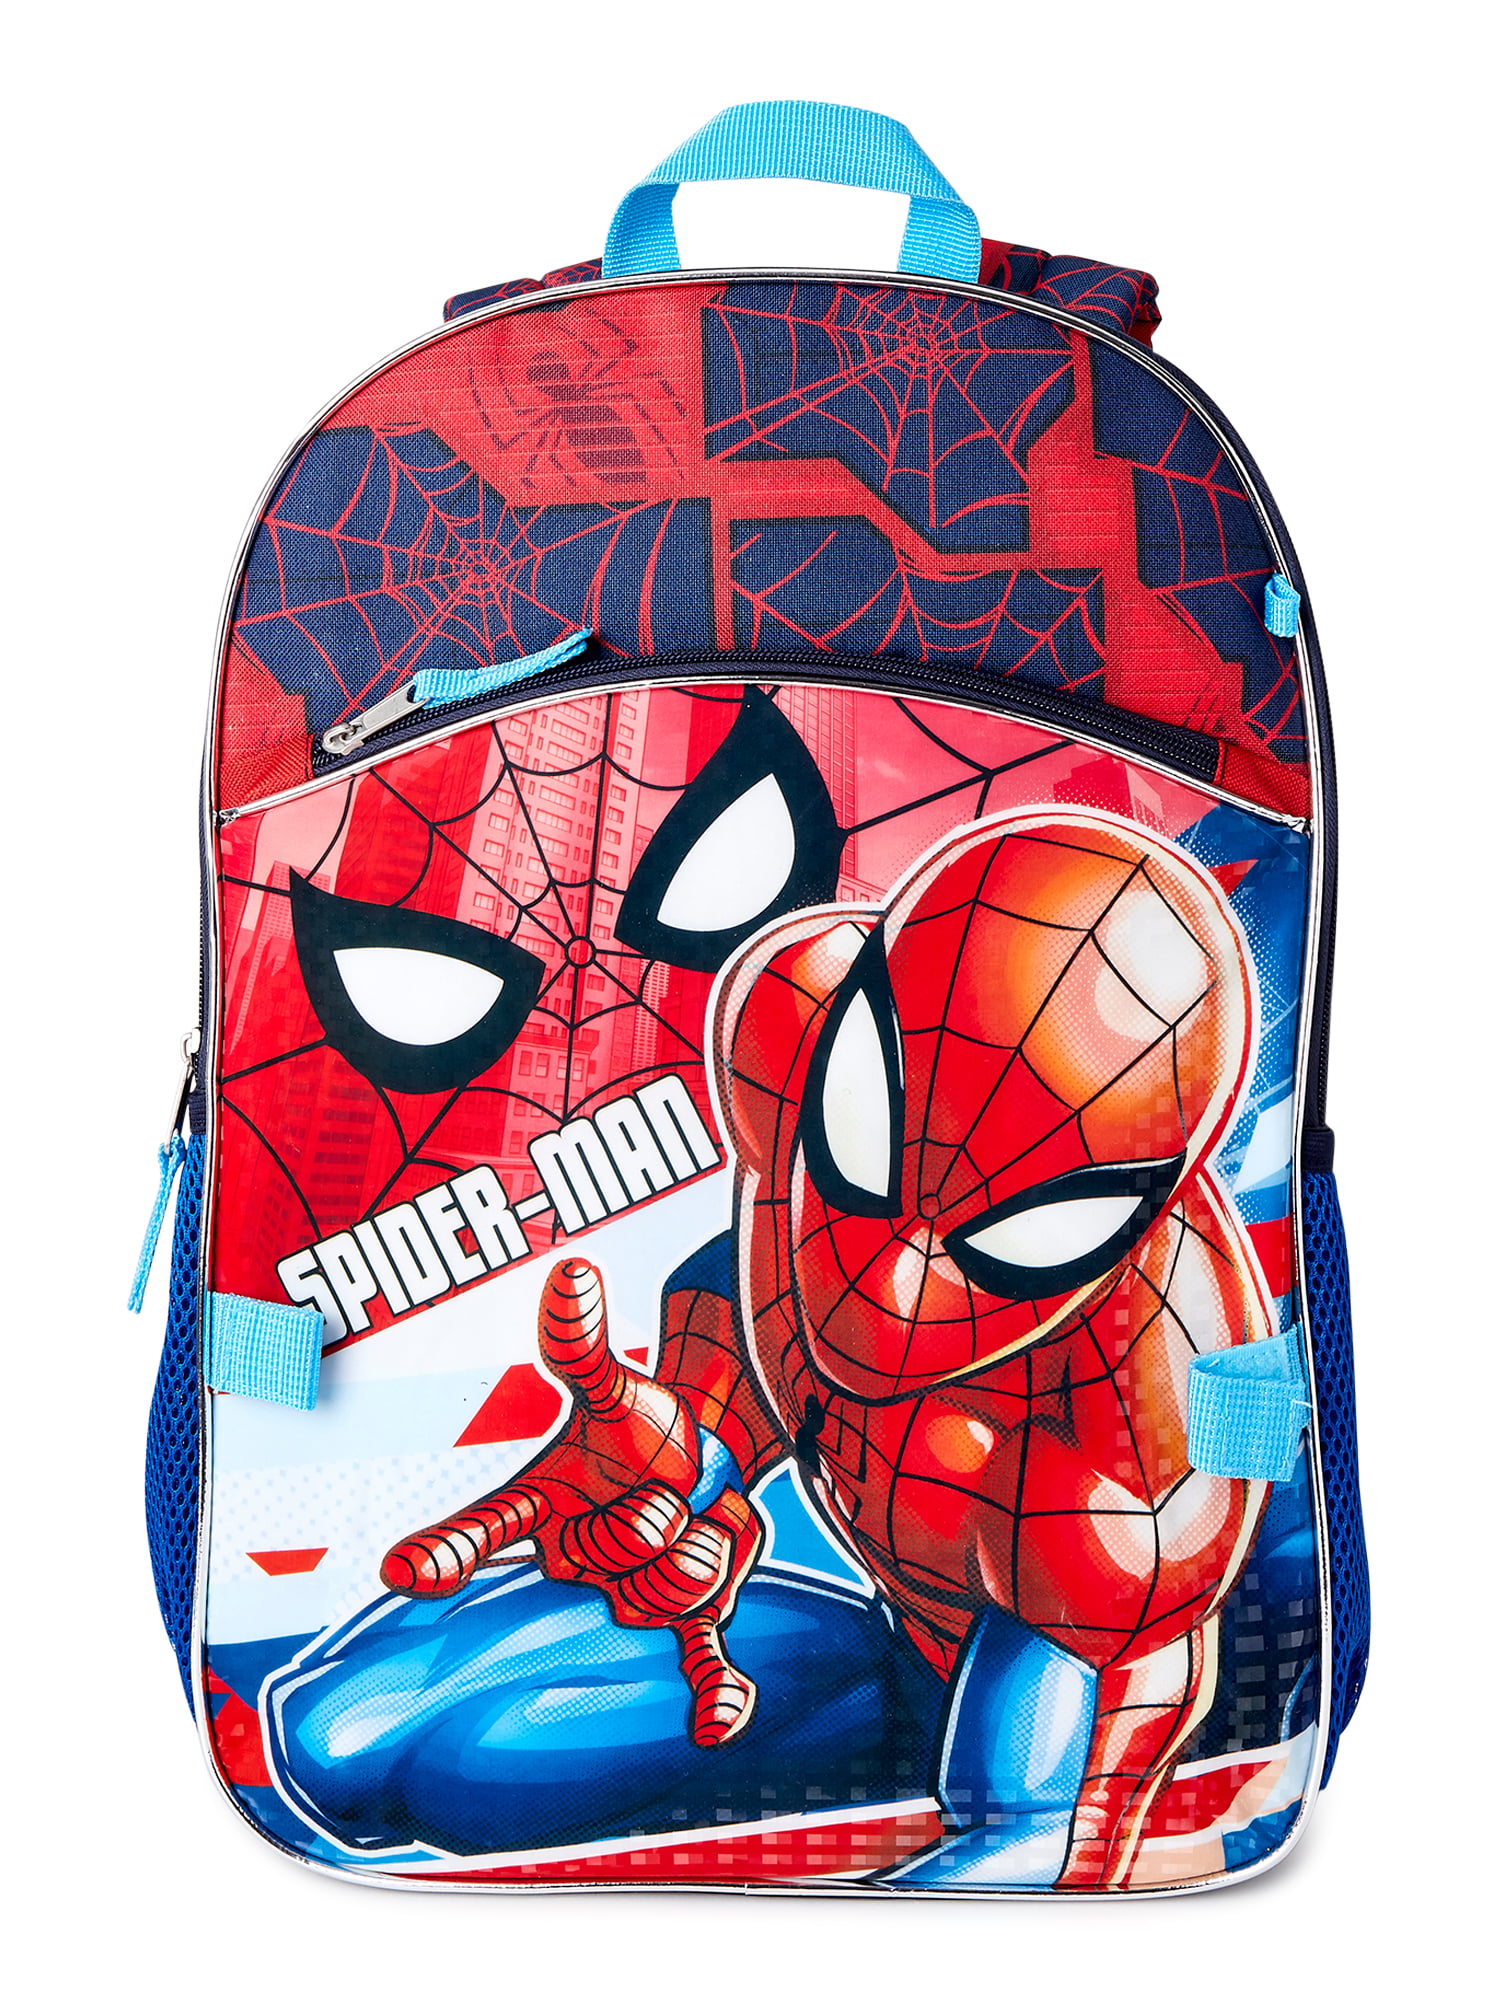 Marvels Spiderman 2 Piece Backpack School Set Marvel Spiderman Backpack Combo Set Red/Blue 